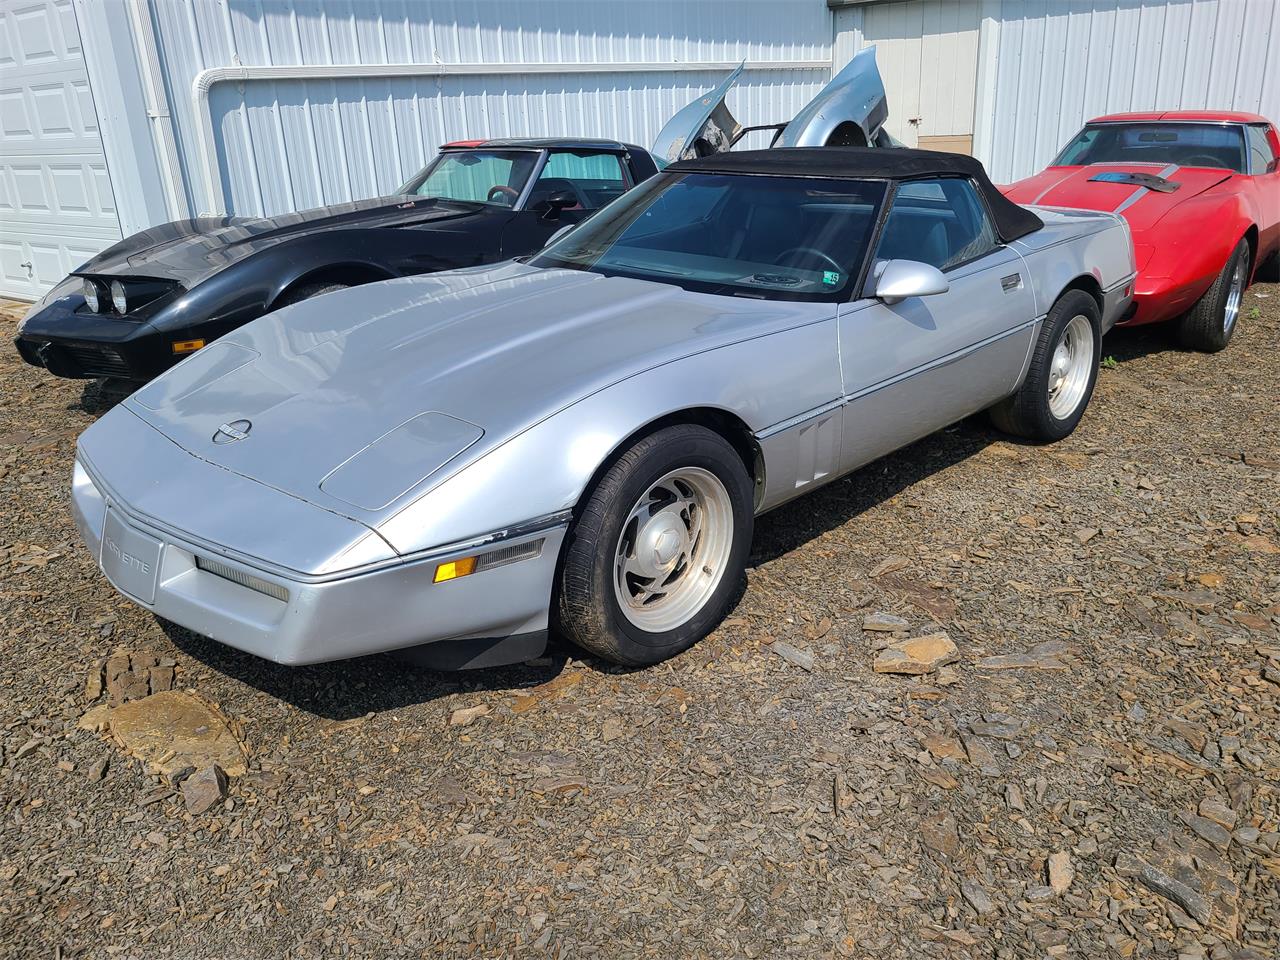 For Sale: 1987 Chevrolet Corvette in martinsburg, Pennsylvania for sale in Martinsburg, PA